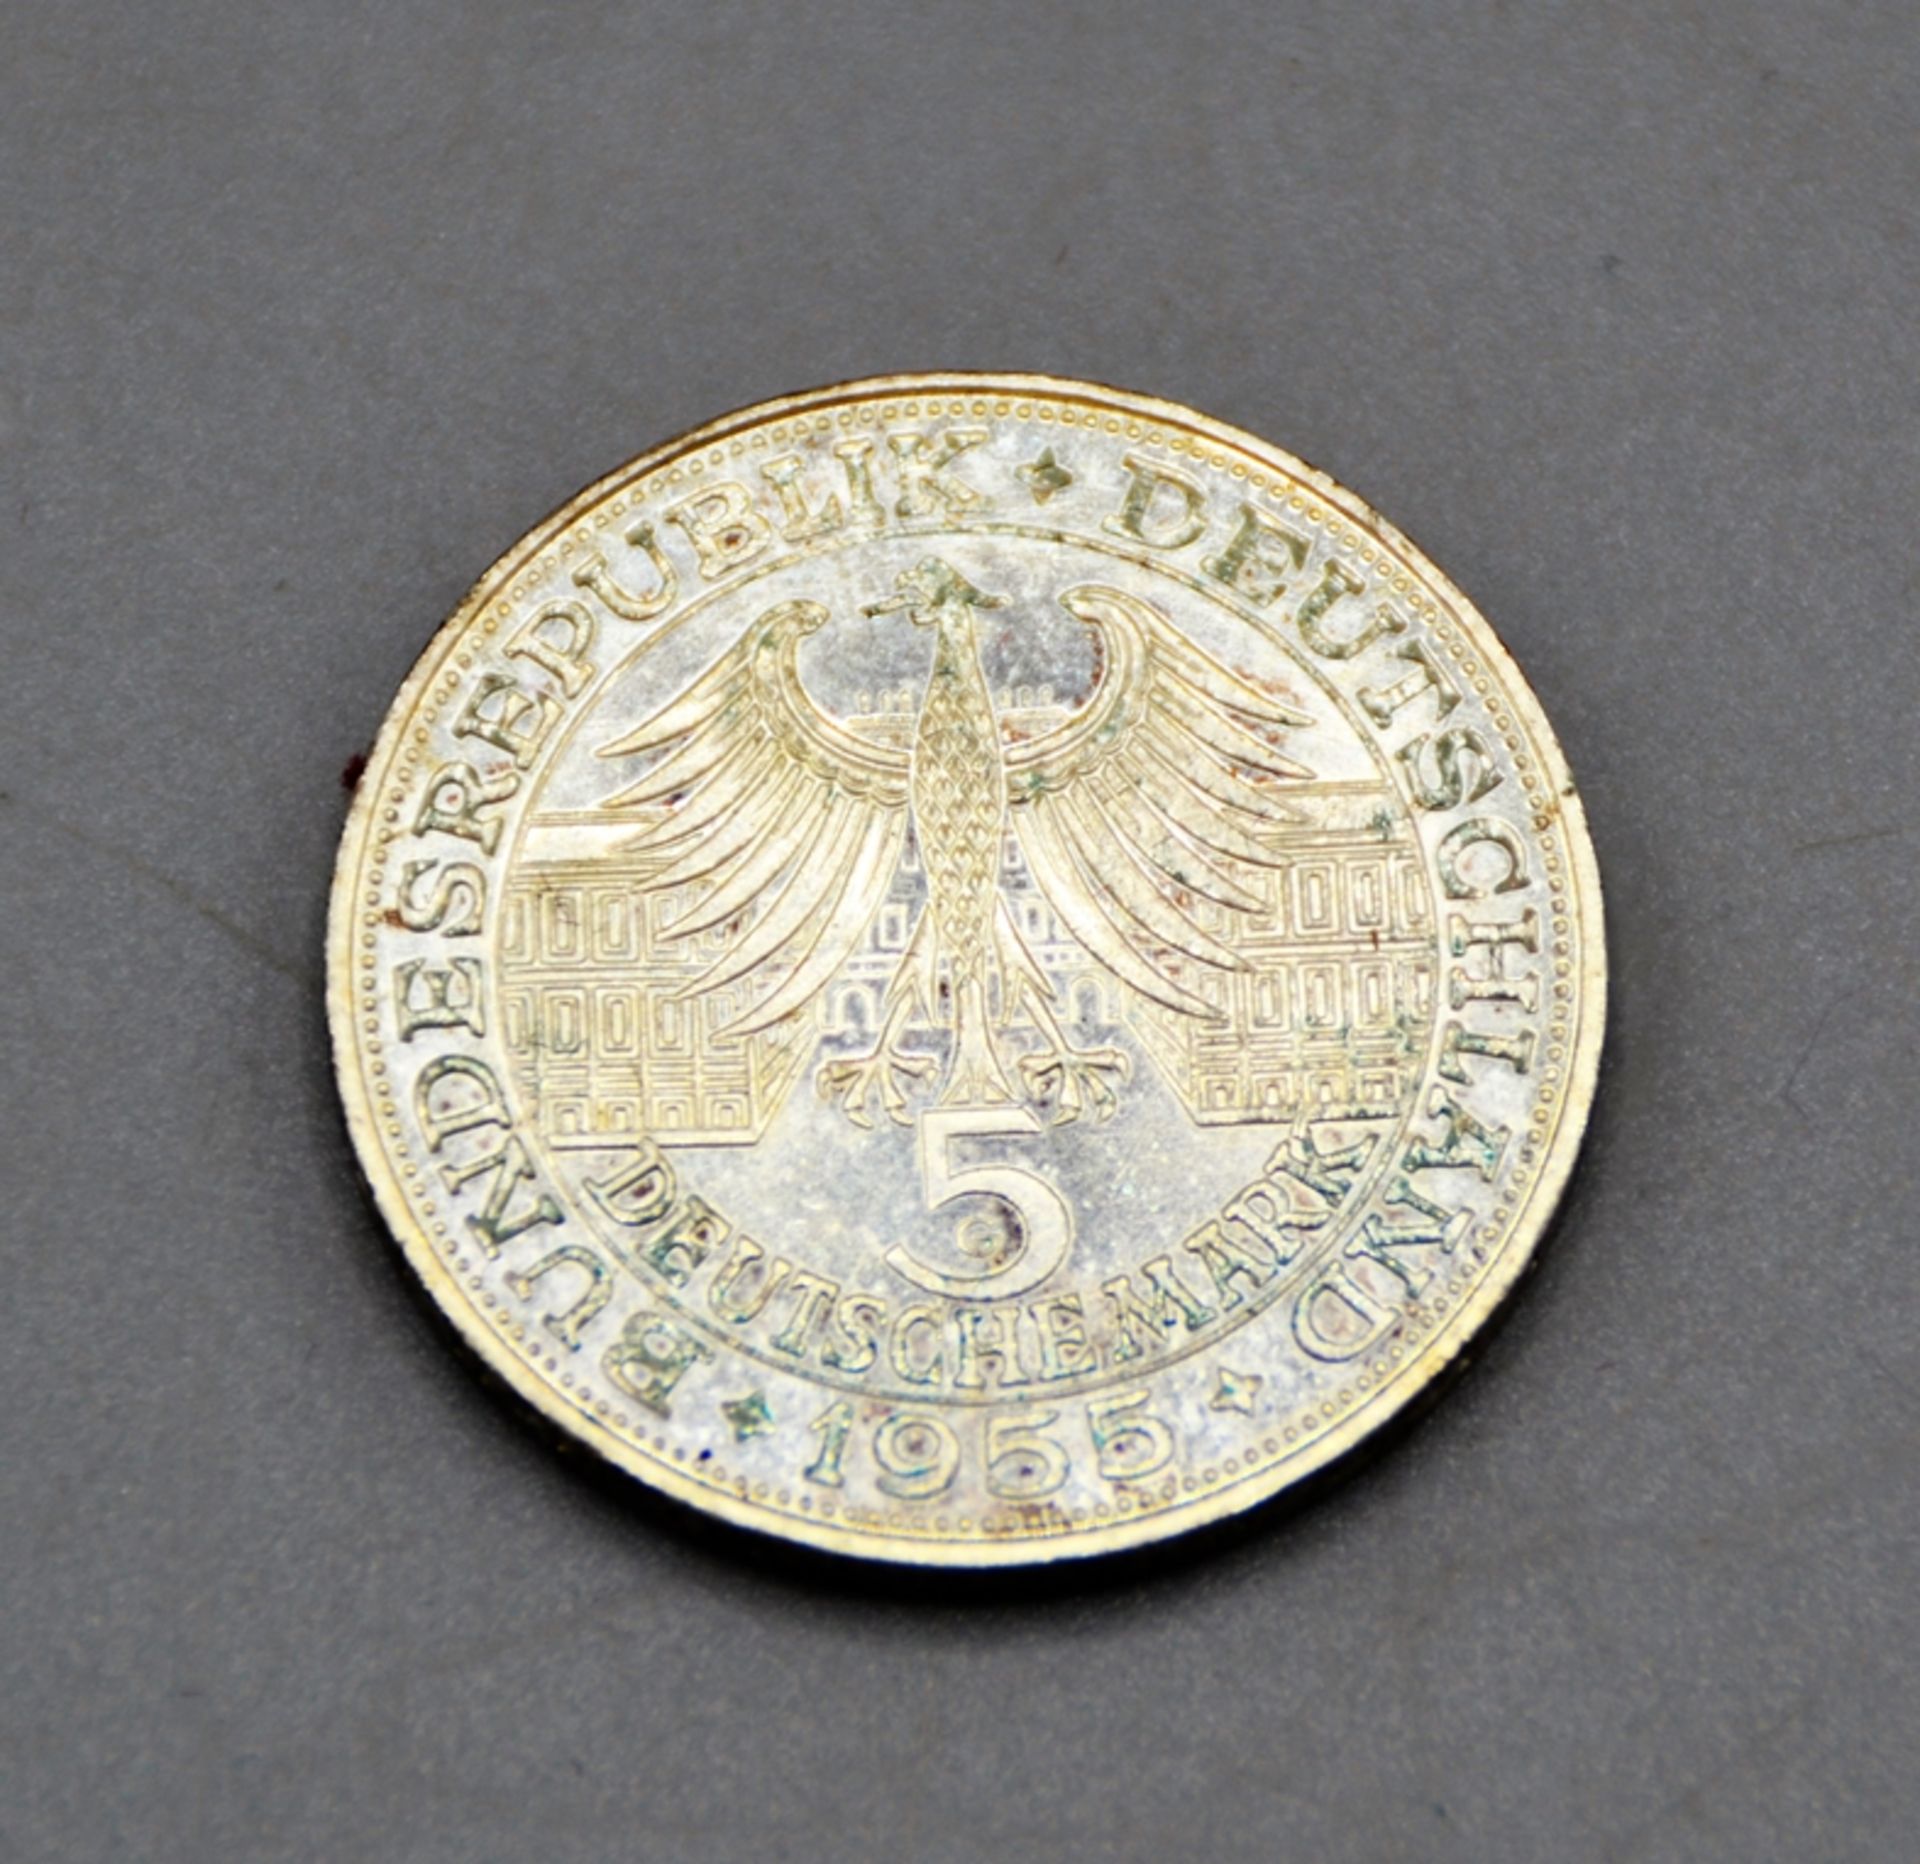 5 DM 1955 G Ludwig Wilhelm Markgraf von Baden Gedenkmünze Silber - Bild 2 aus 2